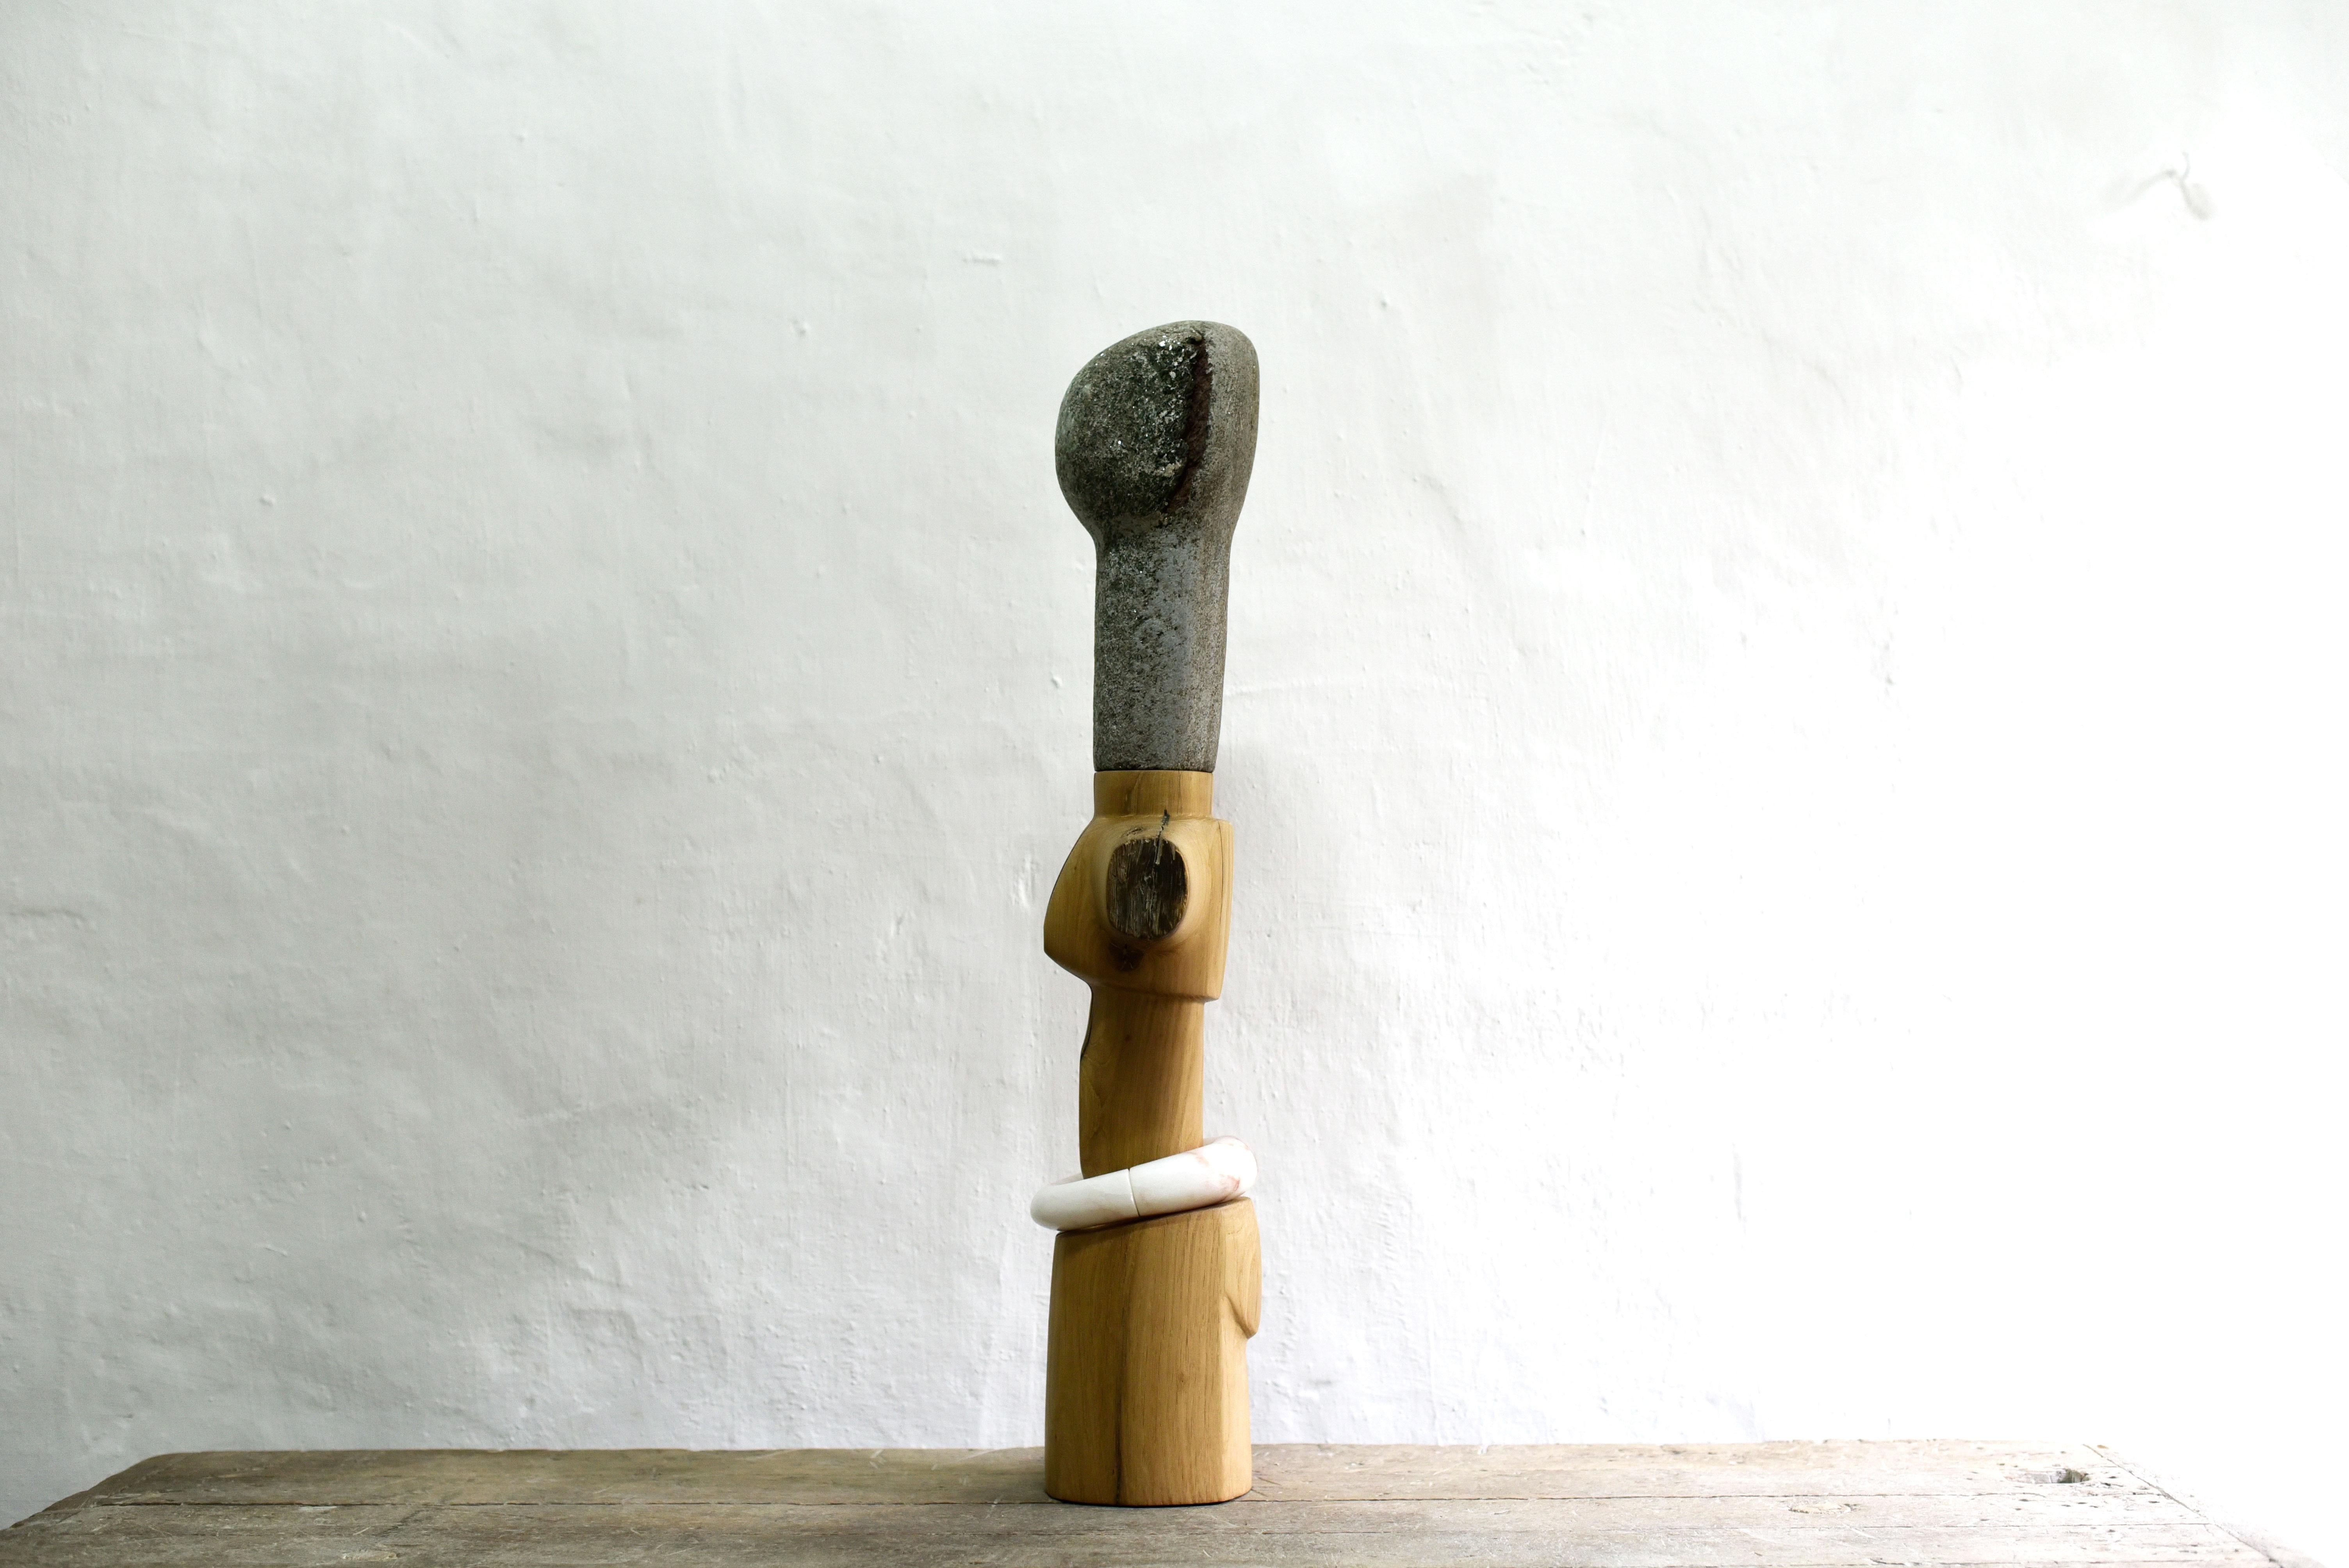 Yann Barrere - Akua'ba - Sculpture originale
Dimensions : 82 x 23 x 16 cm
Matériaux : Mica-fuschite brésilien, albâtre

